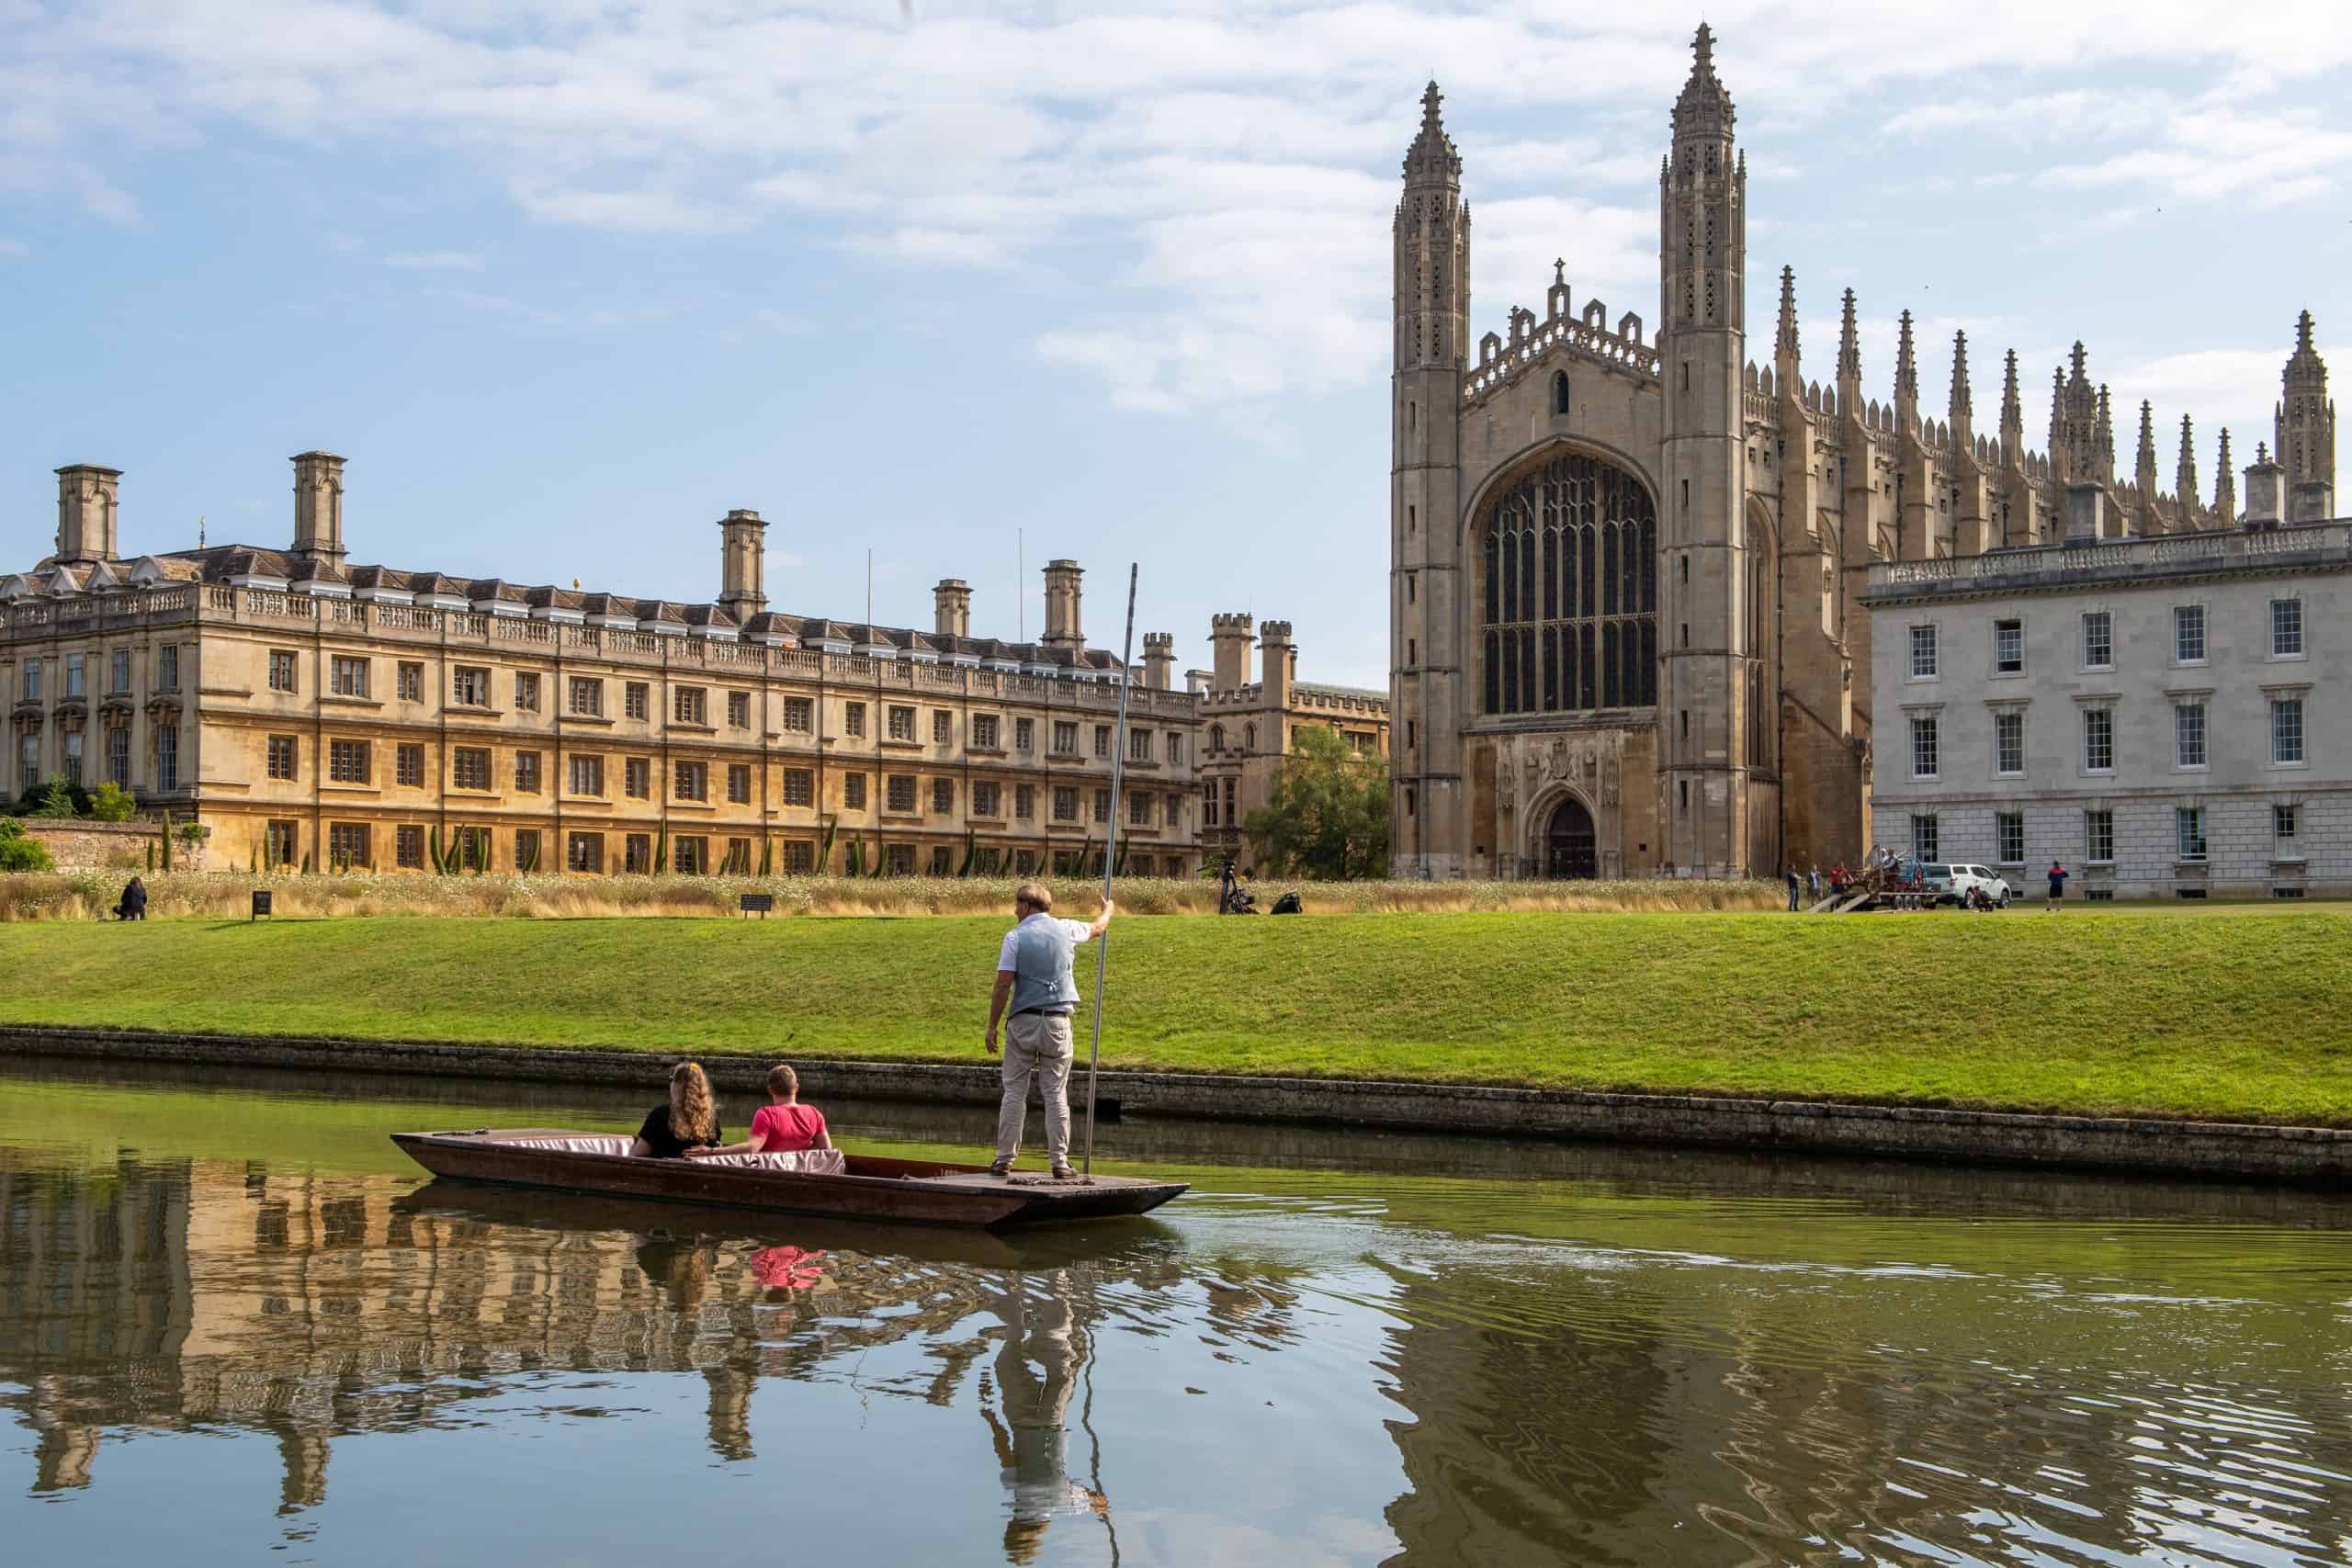 Cambridge University’s economic contribution ‘four times that of Premier League’